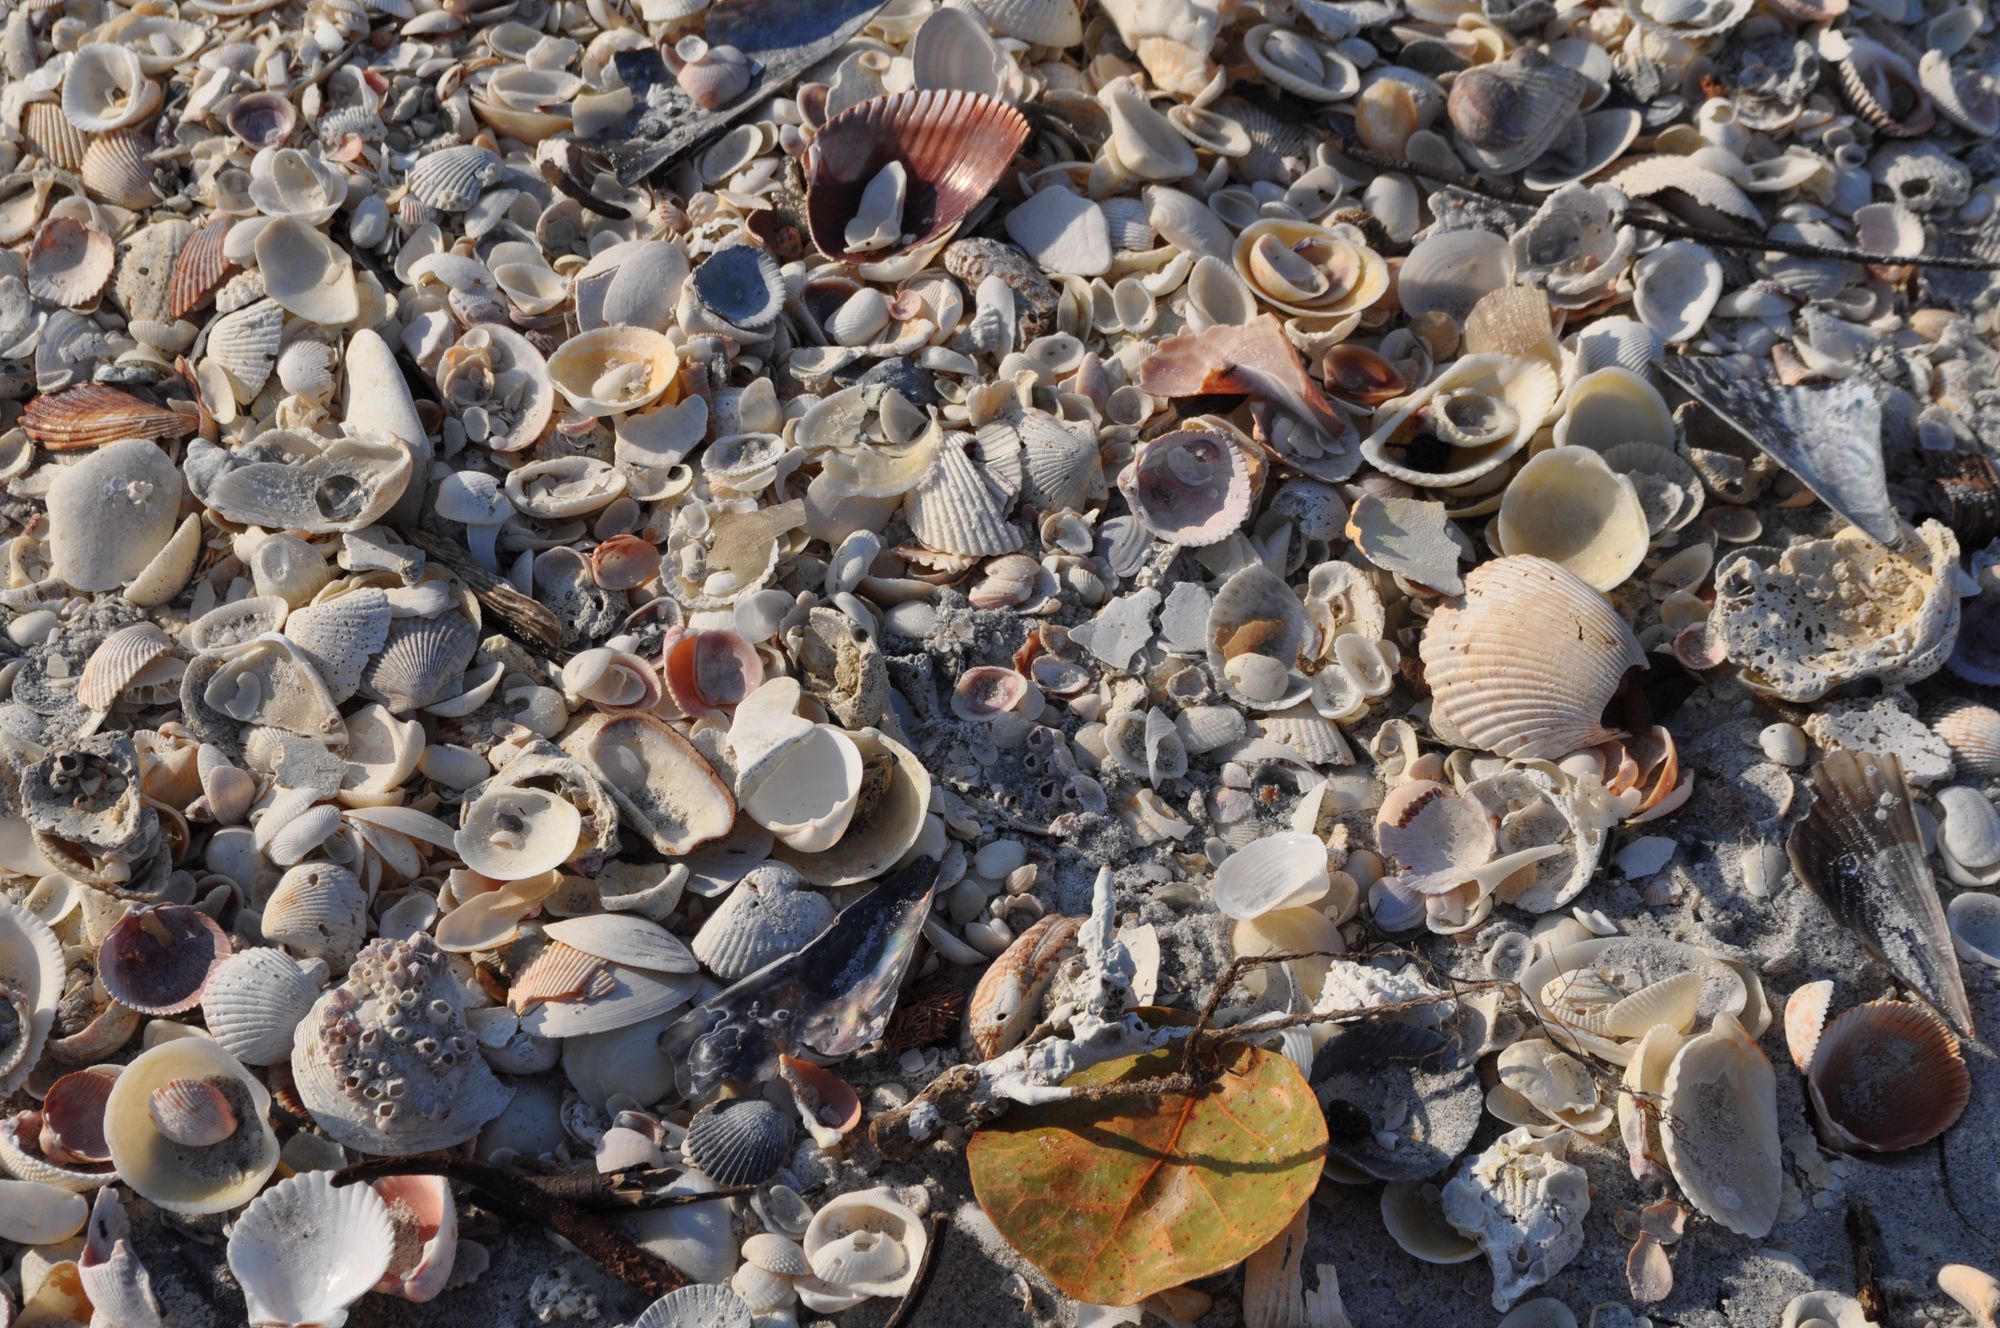 Seashells by Lauren Siegert, Flickr